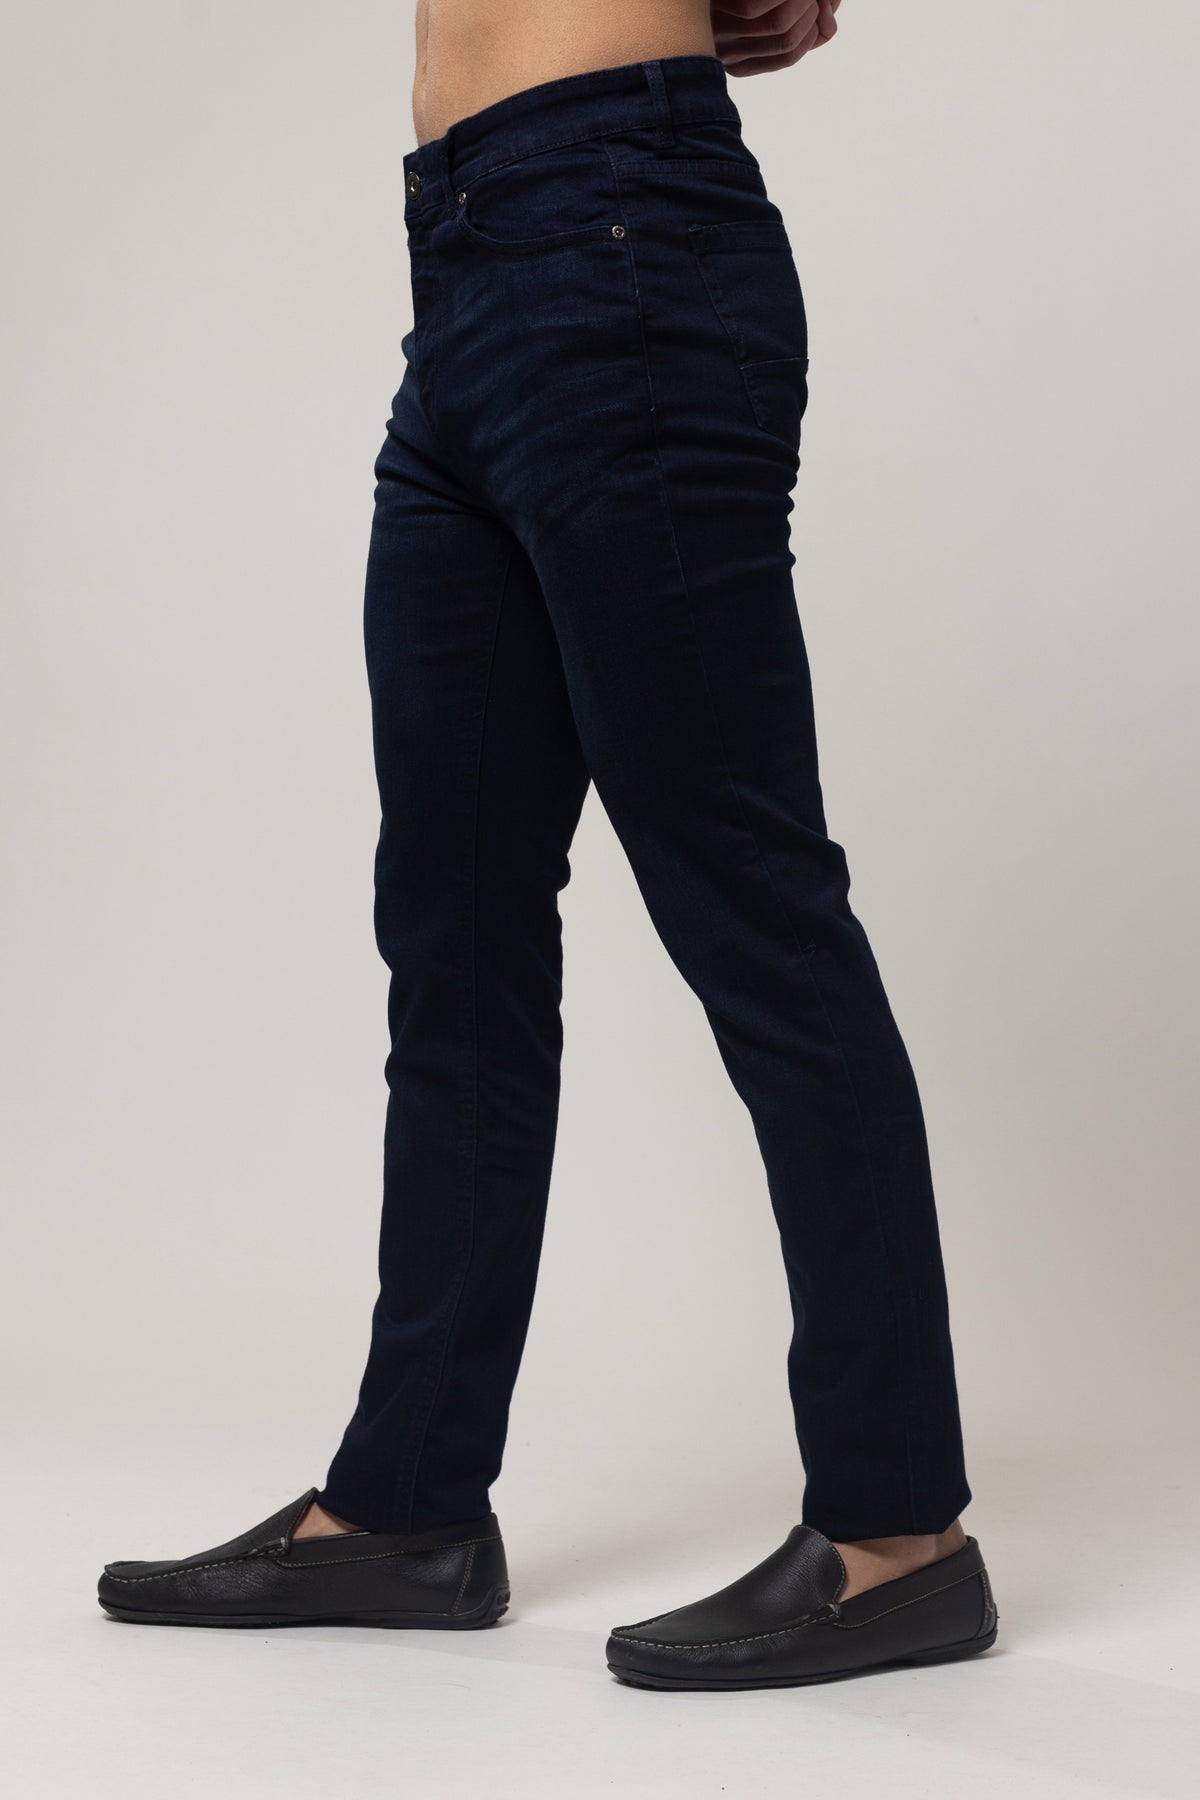 5 Pocket Jeans  - Blue